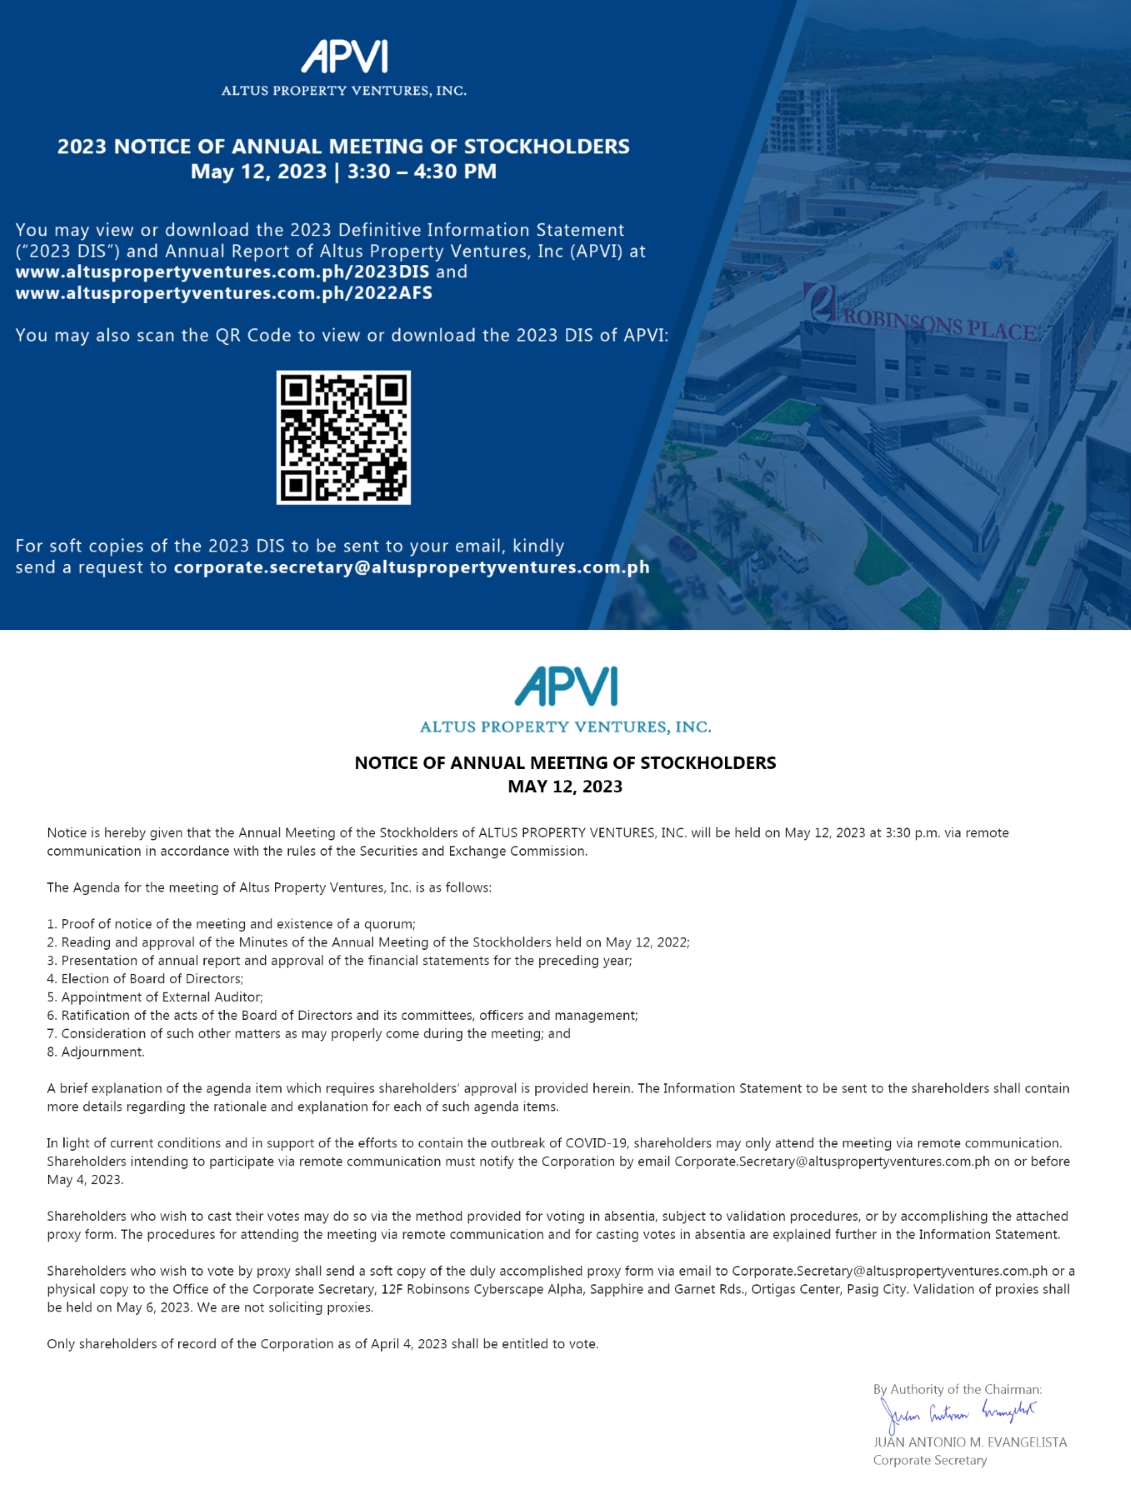 APVI ASM Notice 2023